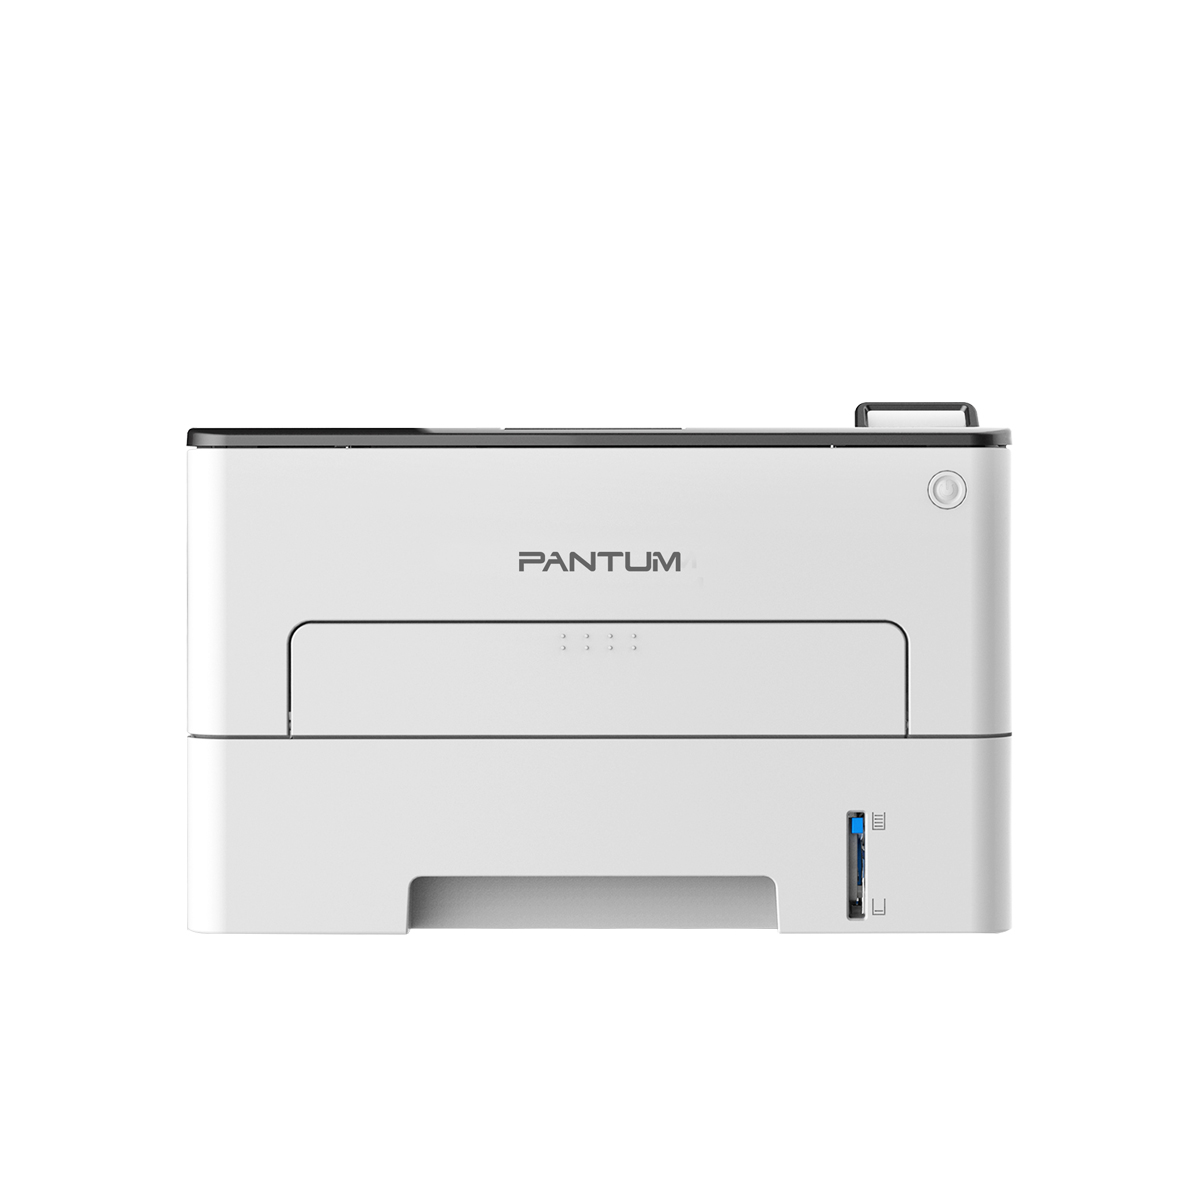 Принтер лазерный Pantum P3300DW, черно-белая печать, 33 стр/мин, 1200 x 1200 dpi, 256Мб RAM, USB, Ethernet, Wi-Fi